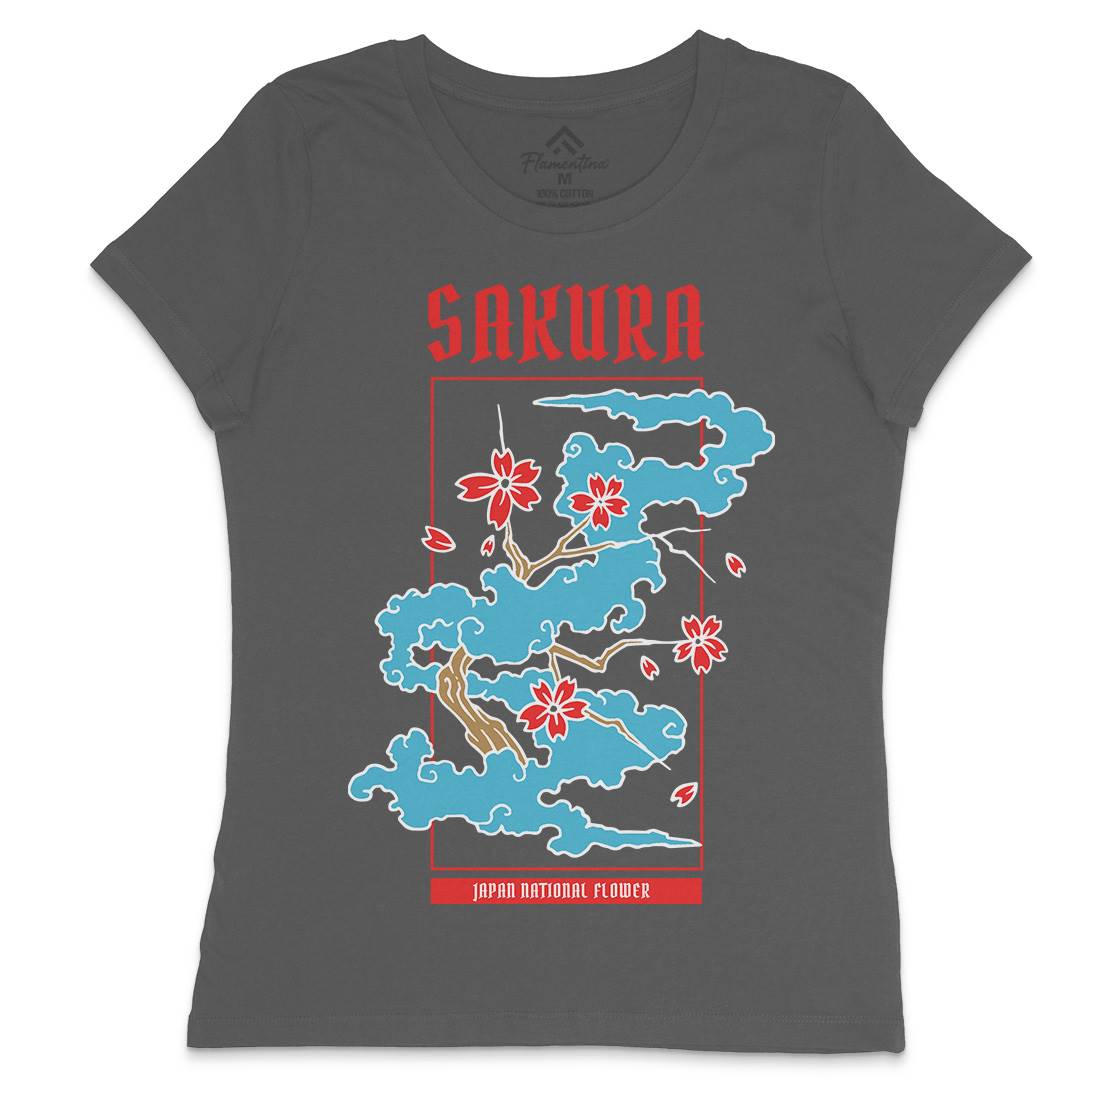 Sakura Womens Crew Neck T-Shirt Asian C766